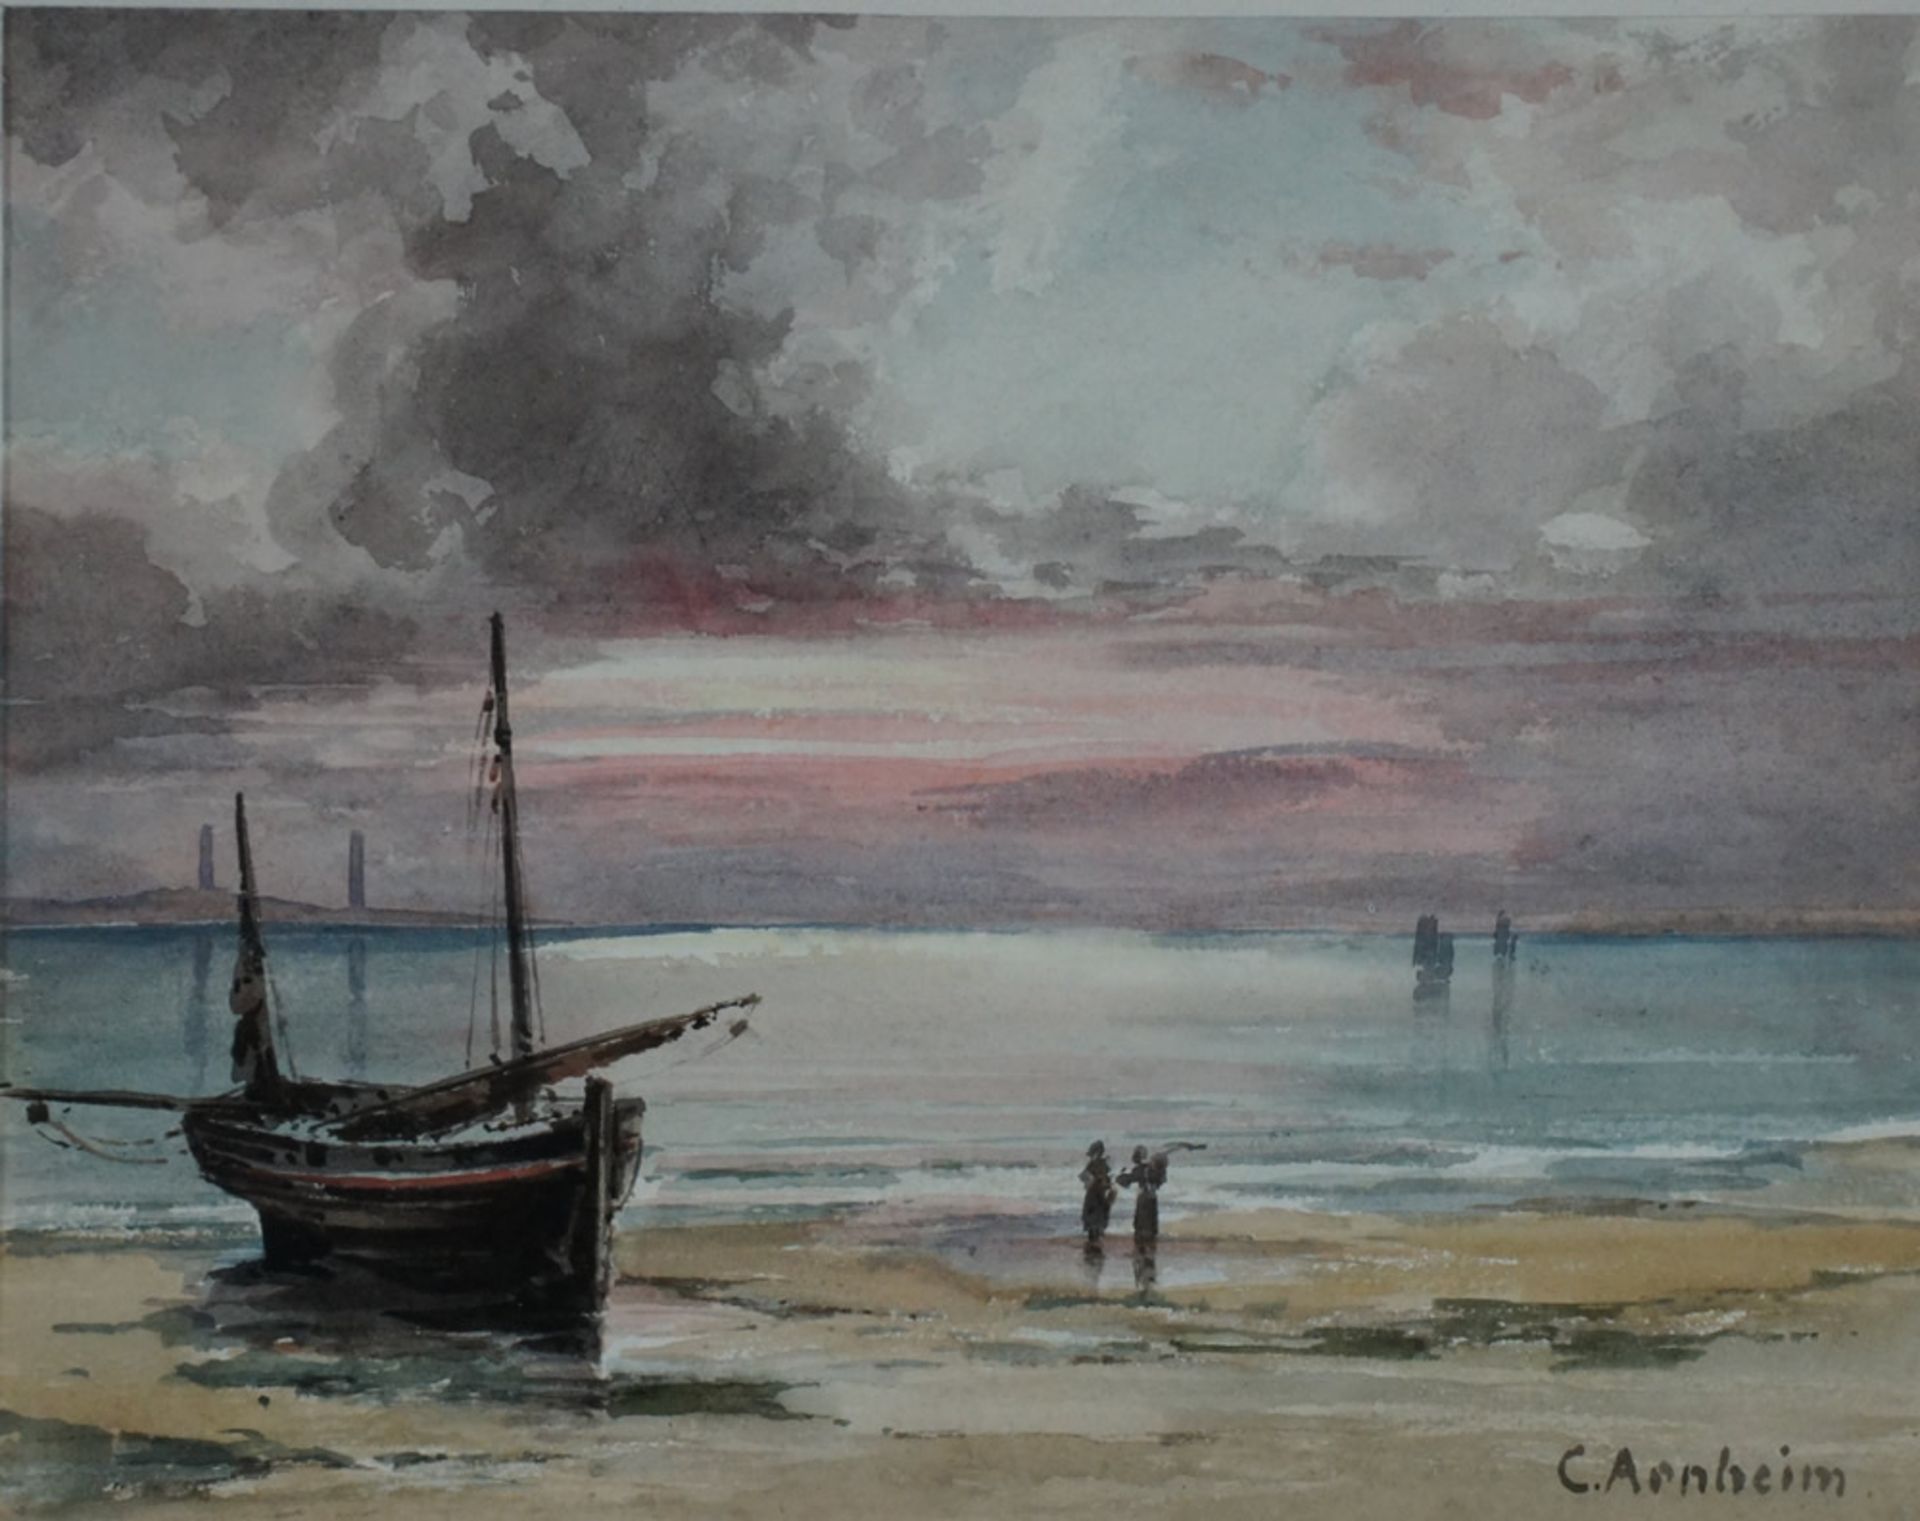 Arnheim, Clara, Ebbe, Aquarell, 21 x 27 cm, sign.